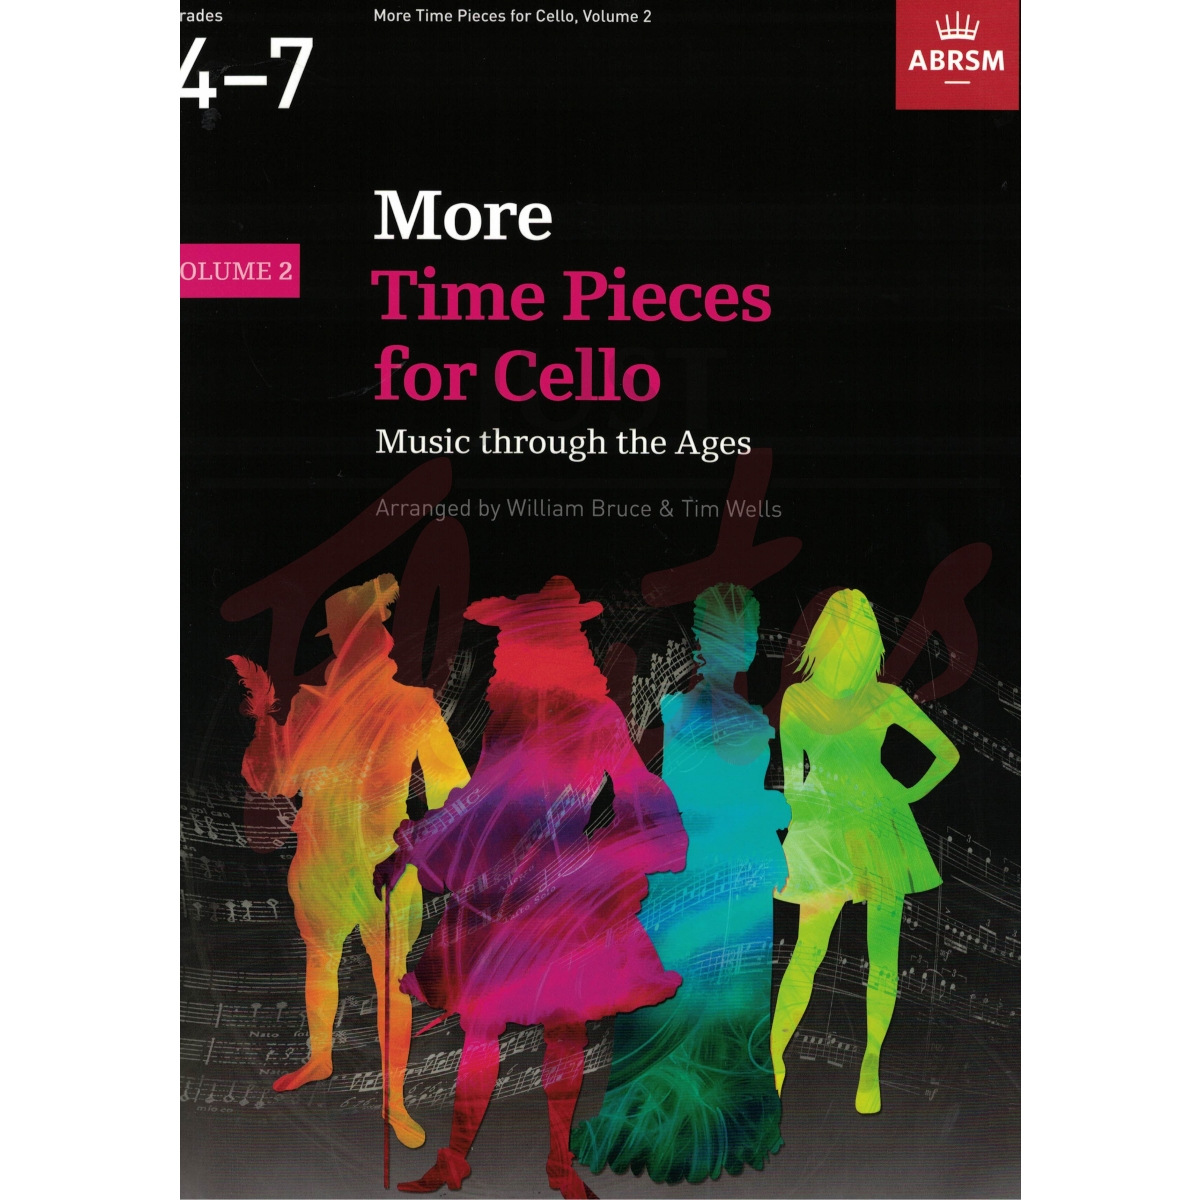 More Time Pieces for Cello Vol. 2